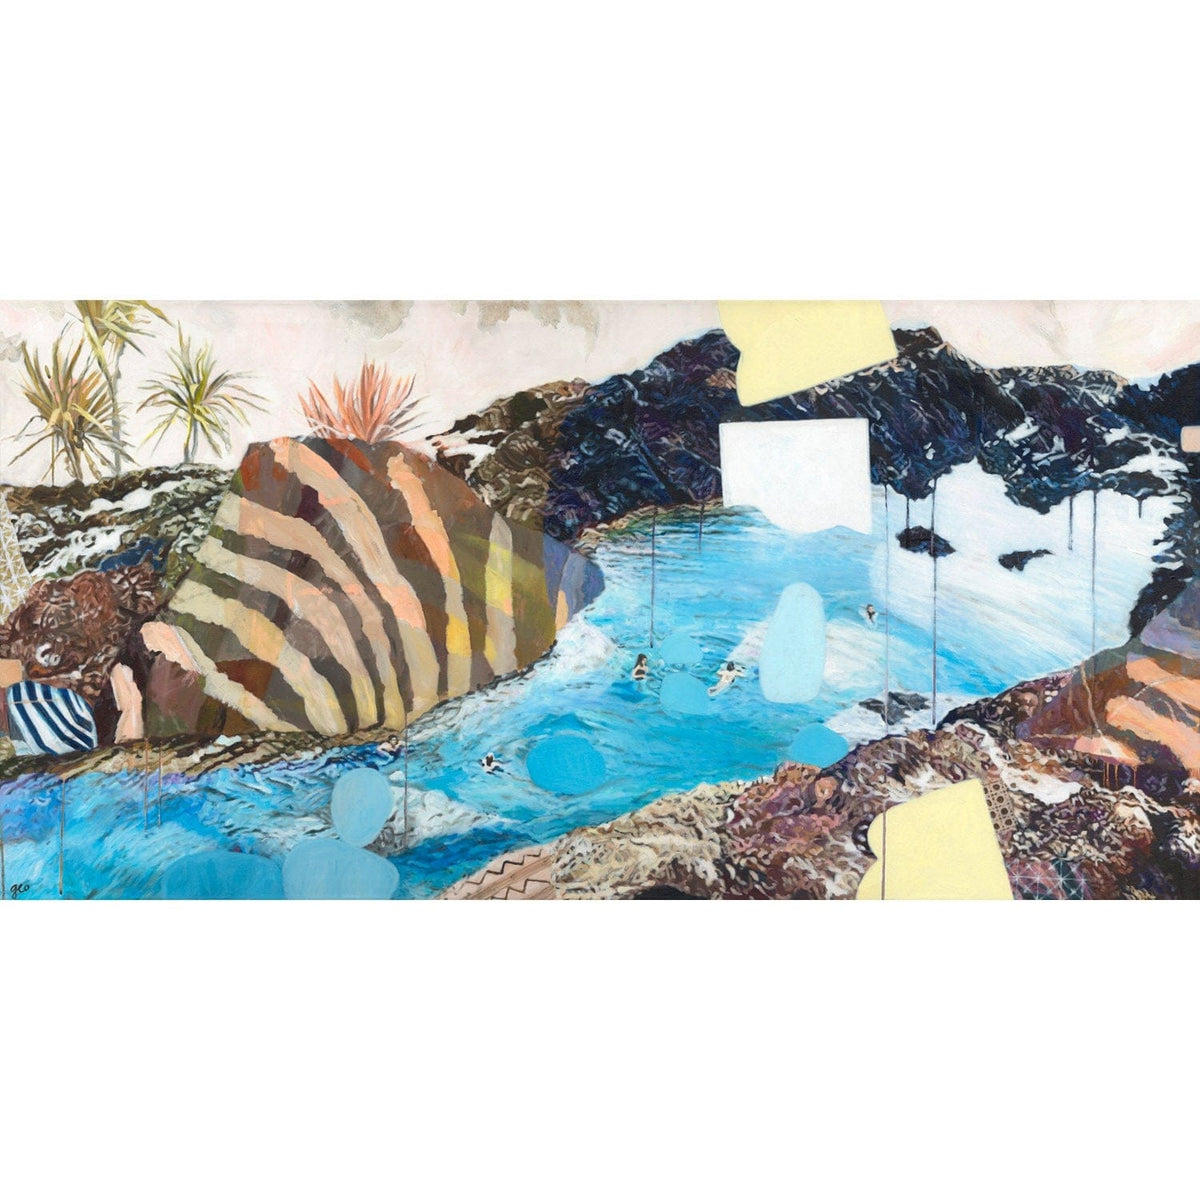 Mermaid Pool - Limited Edition Print